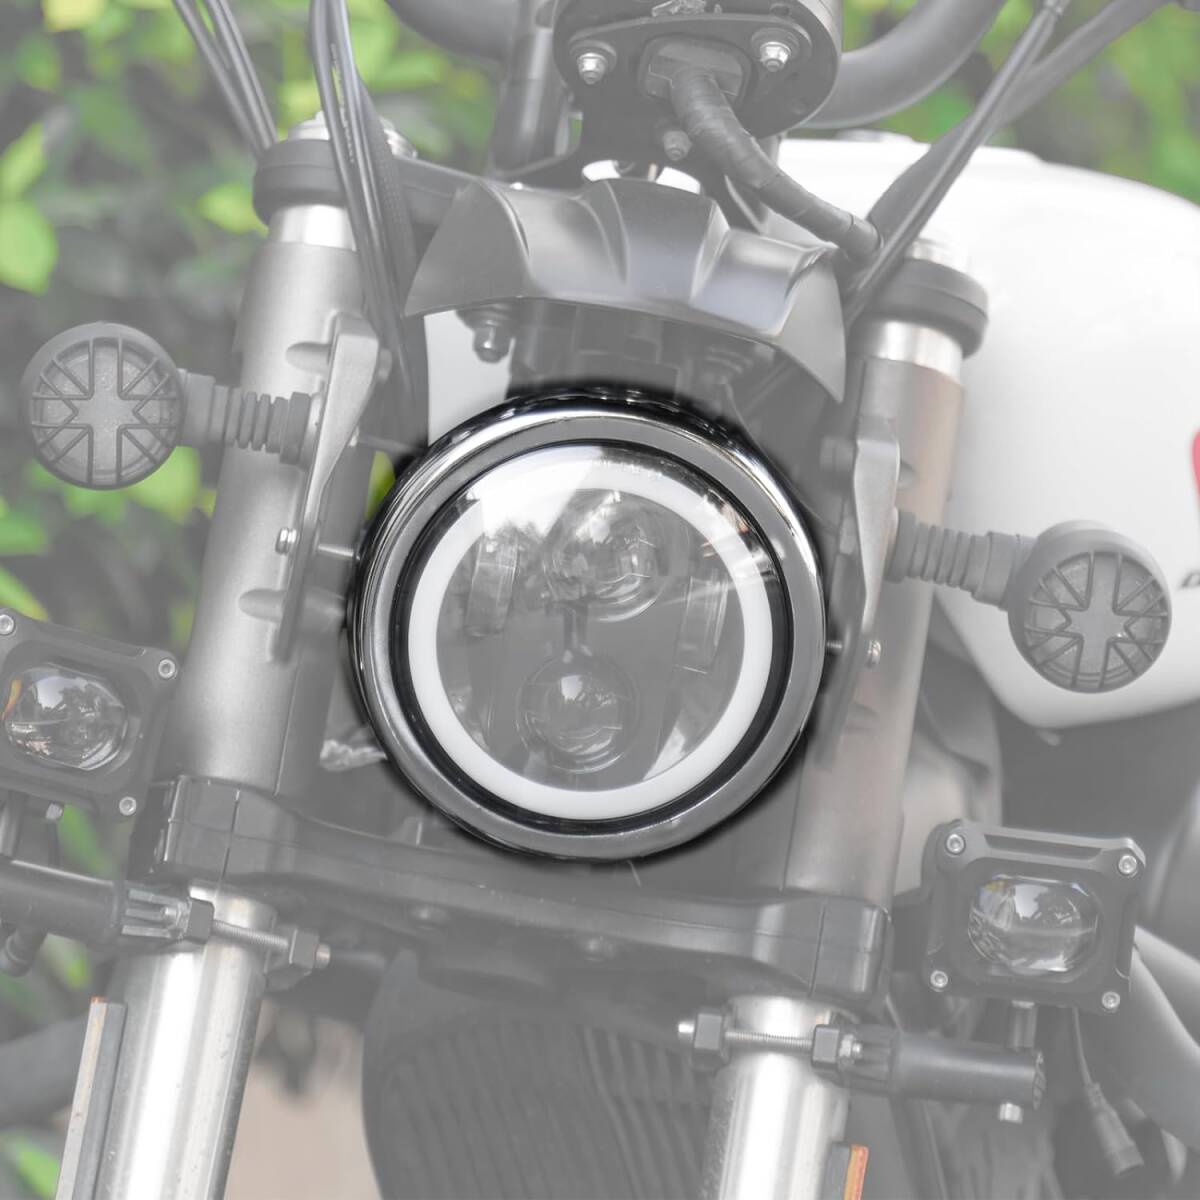 Vancroser 汎用 5.75インチ ヘッドライト ハウジング オートバイ 用 ヘッドライト交換ハウジング 固定用 ハウジングキット 丸型 _画像4